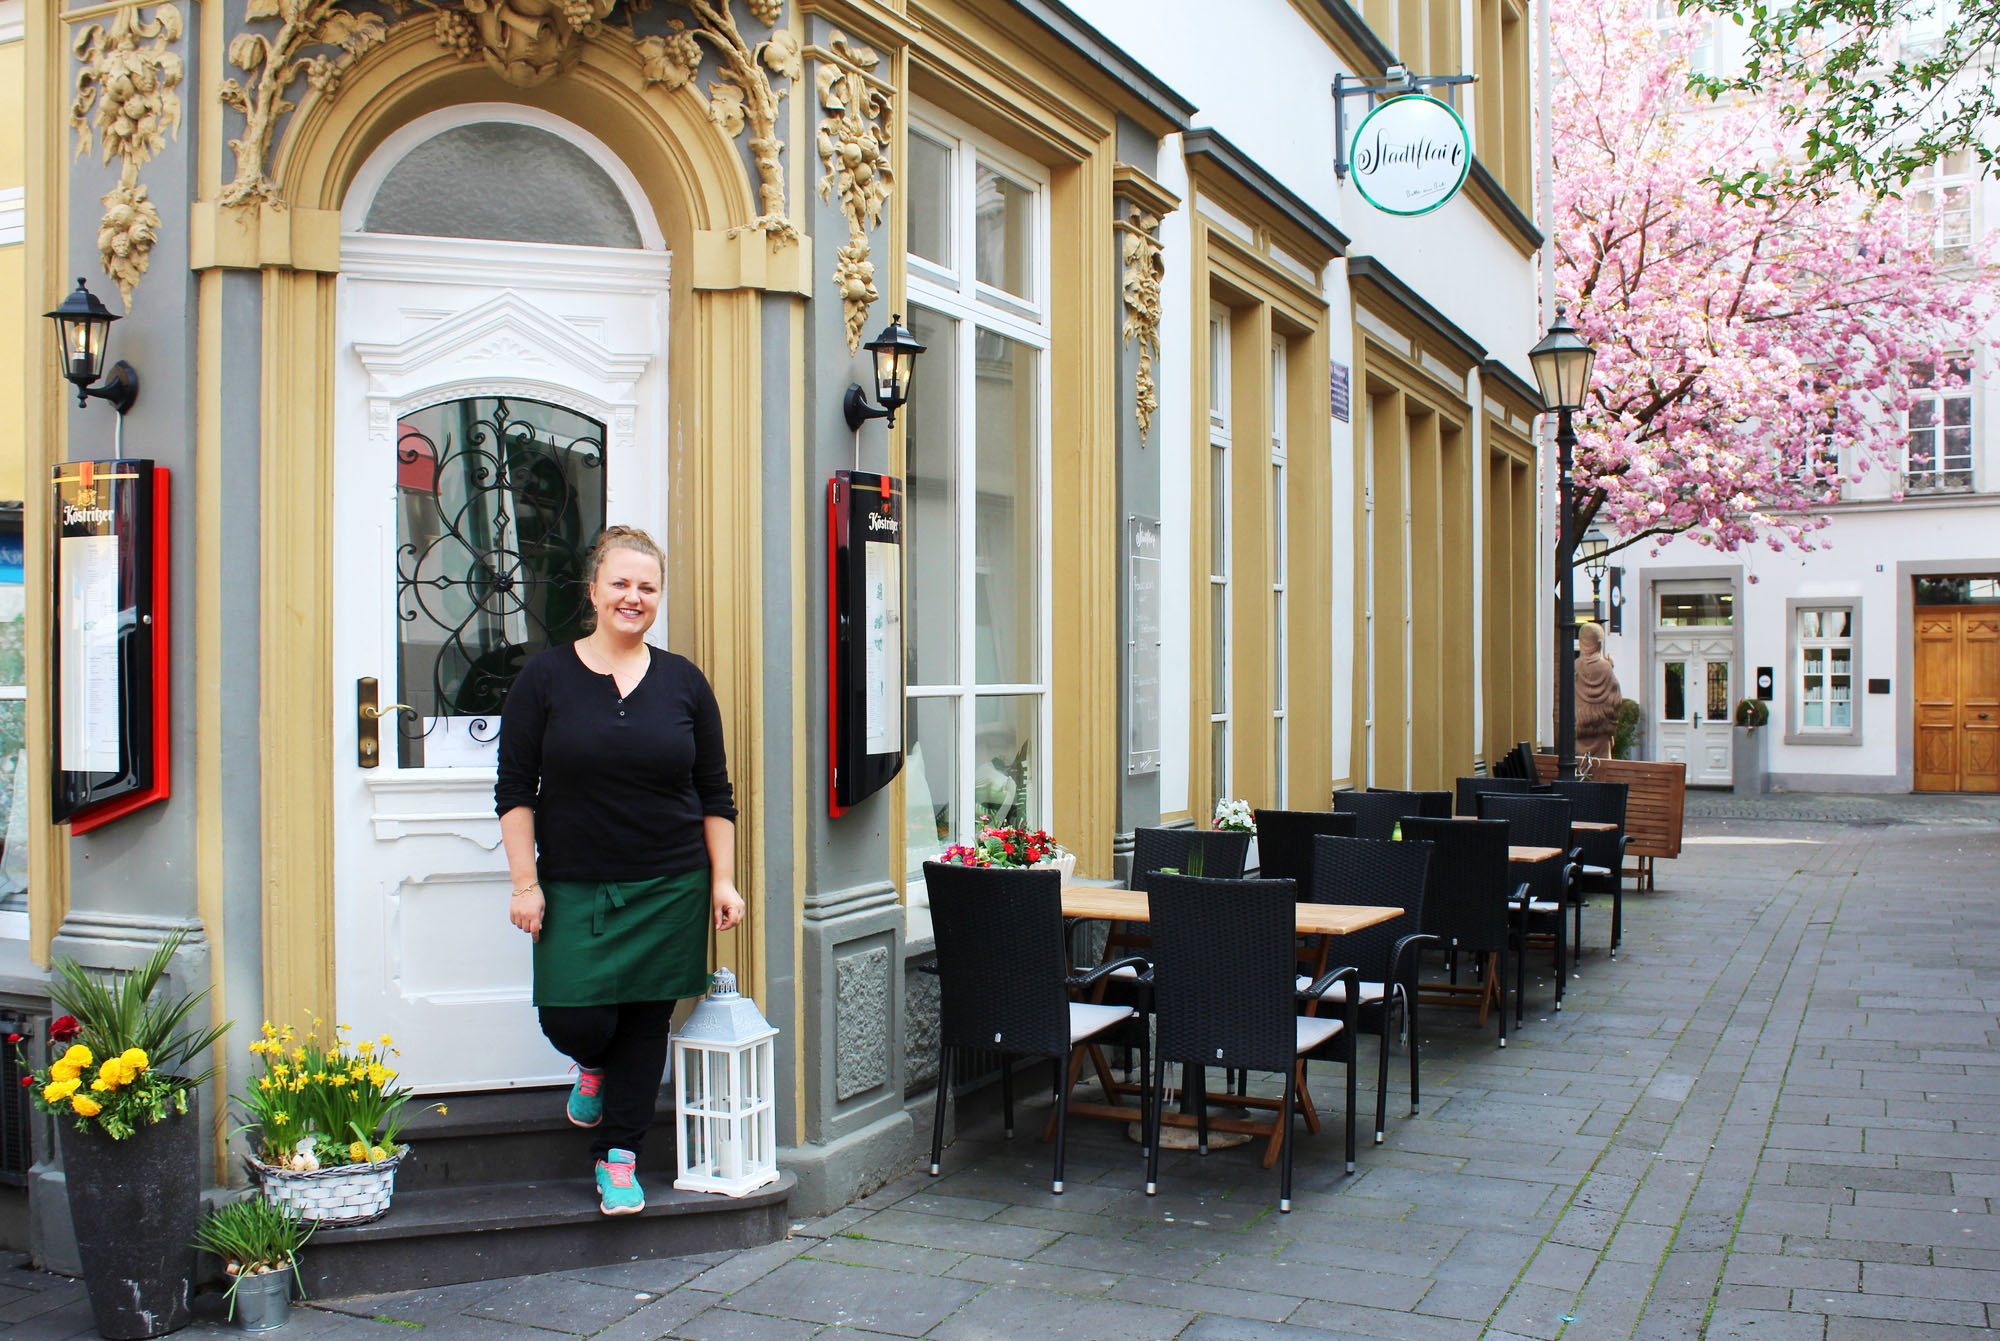 Wechsel in der Altstadt: Im alten Miljöö gibt es wieder ein neues Café